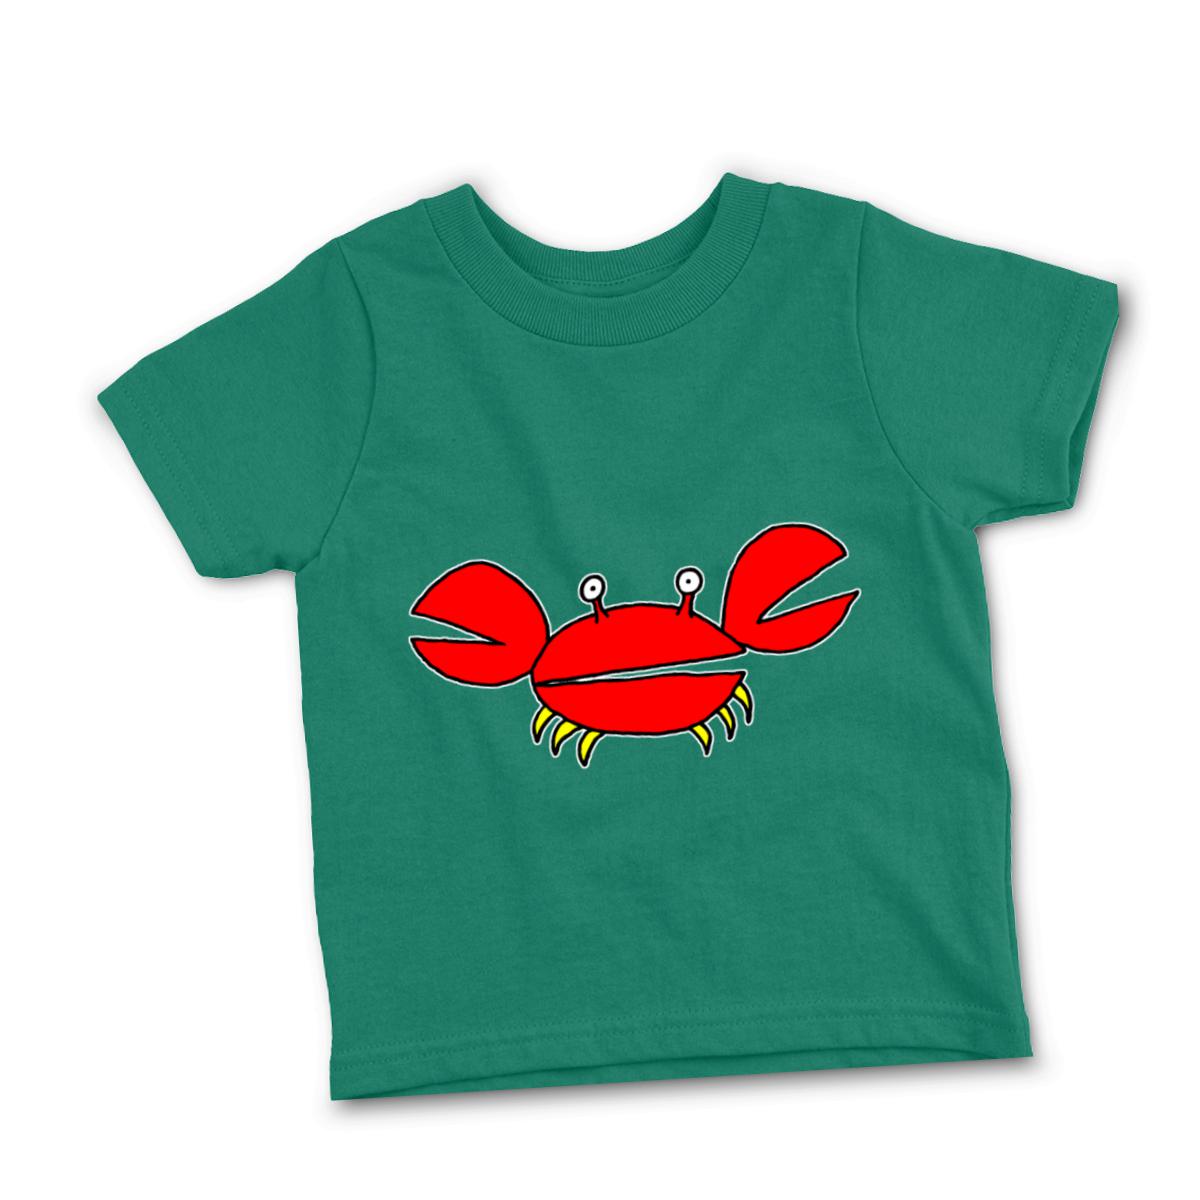 Crab Toddler Tee 56T kelly